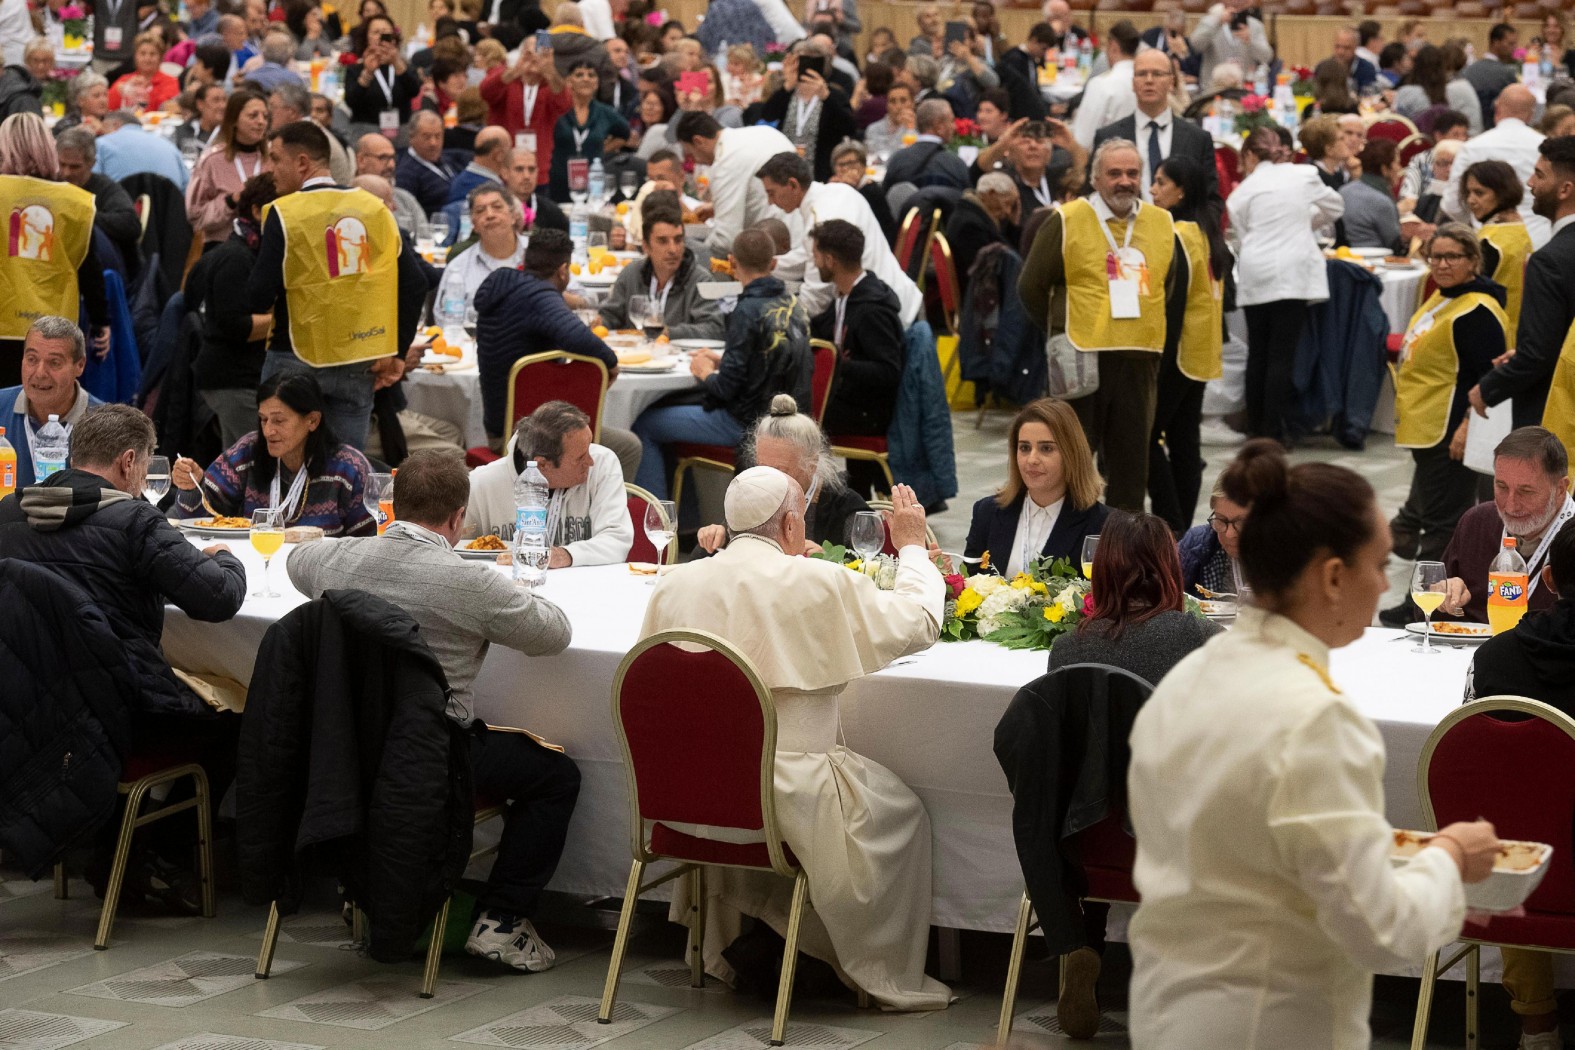 ‘Haast je niet’: paus luncht met armen